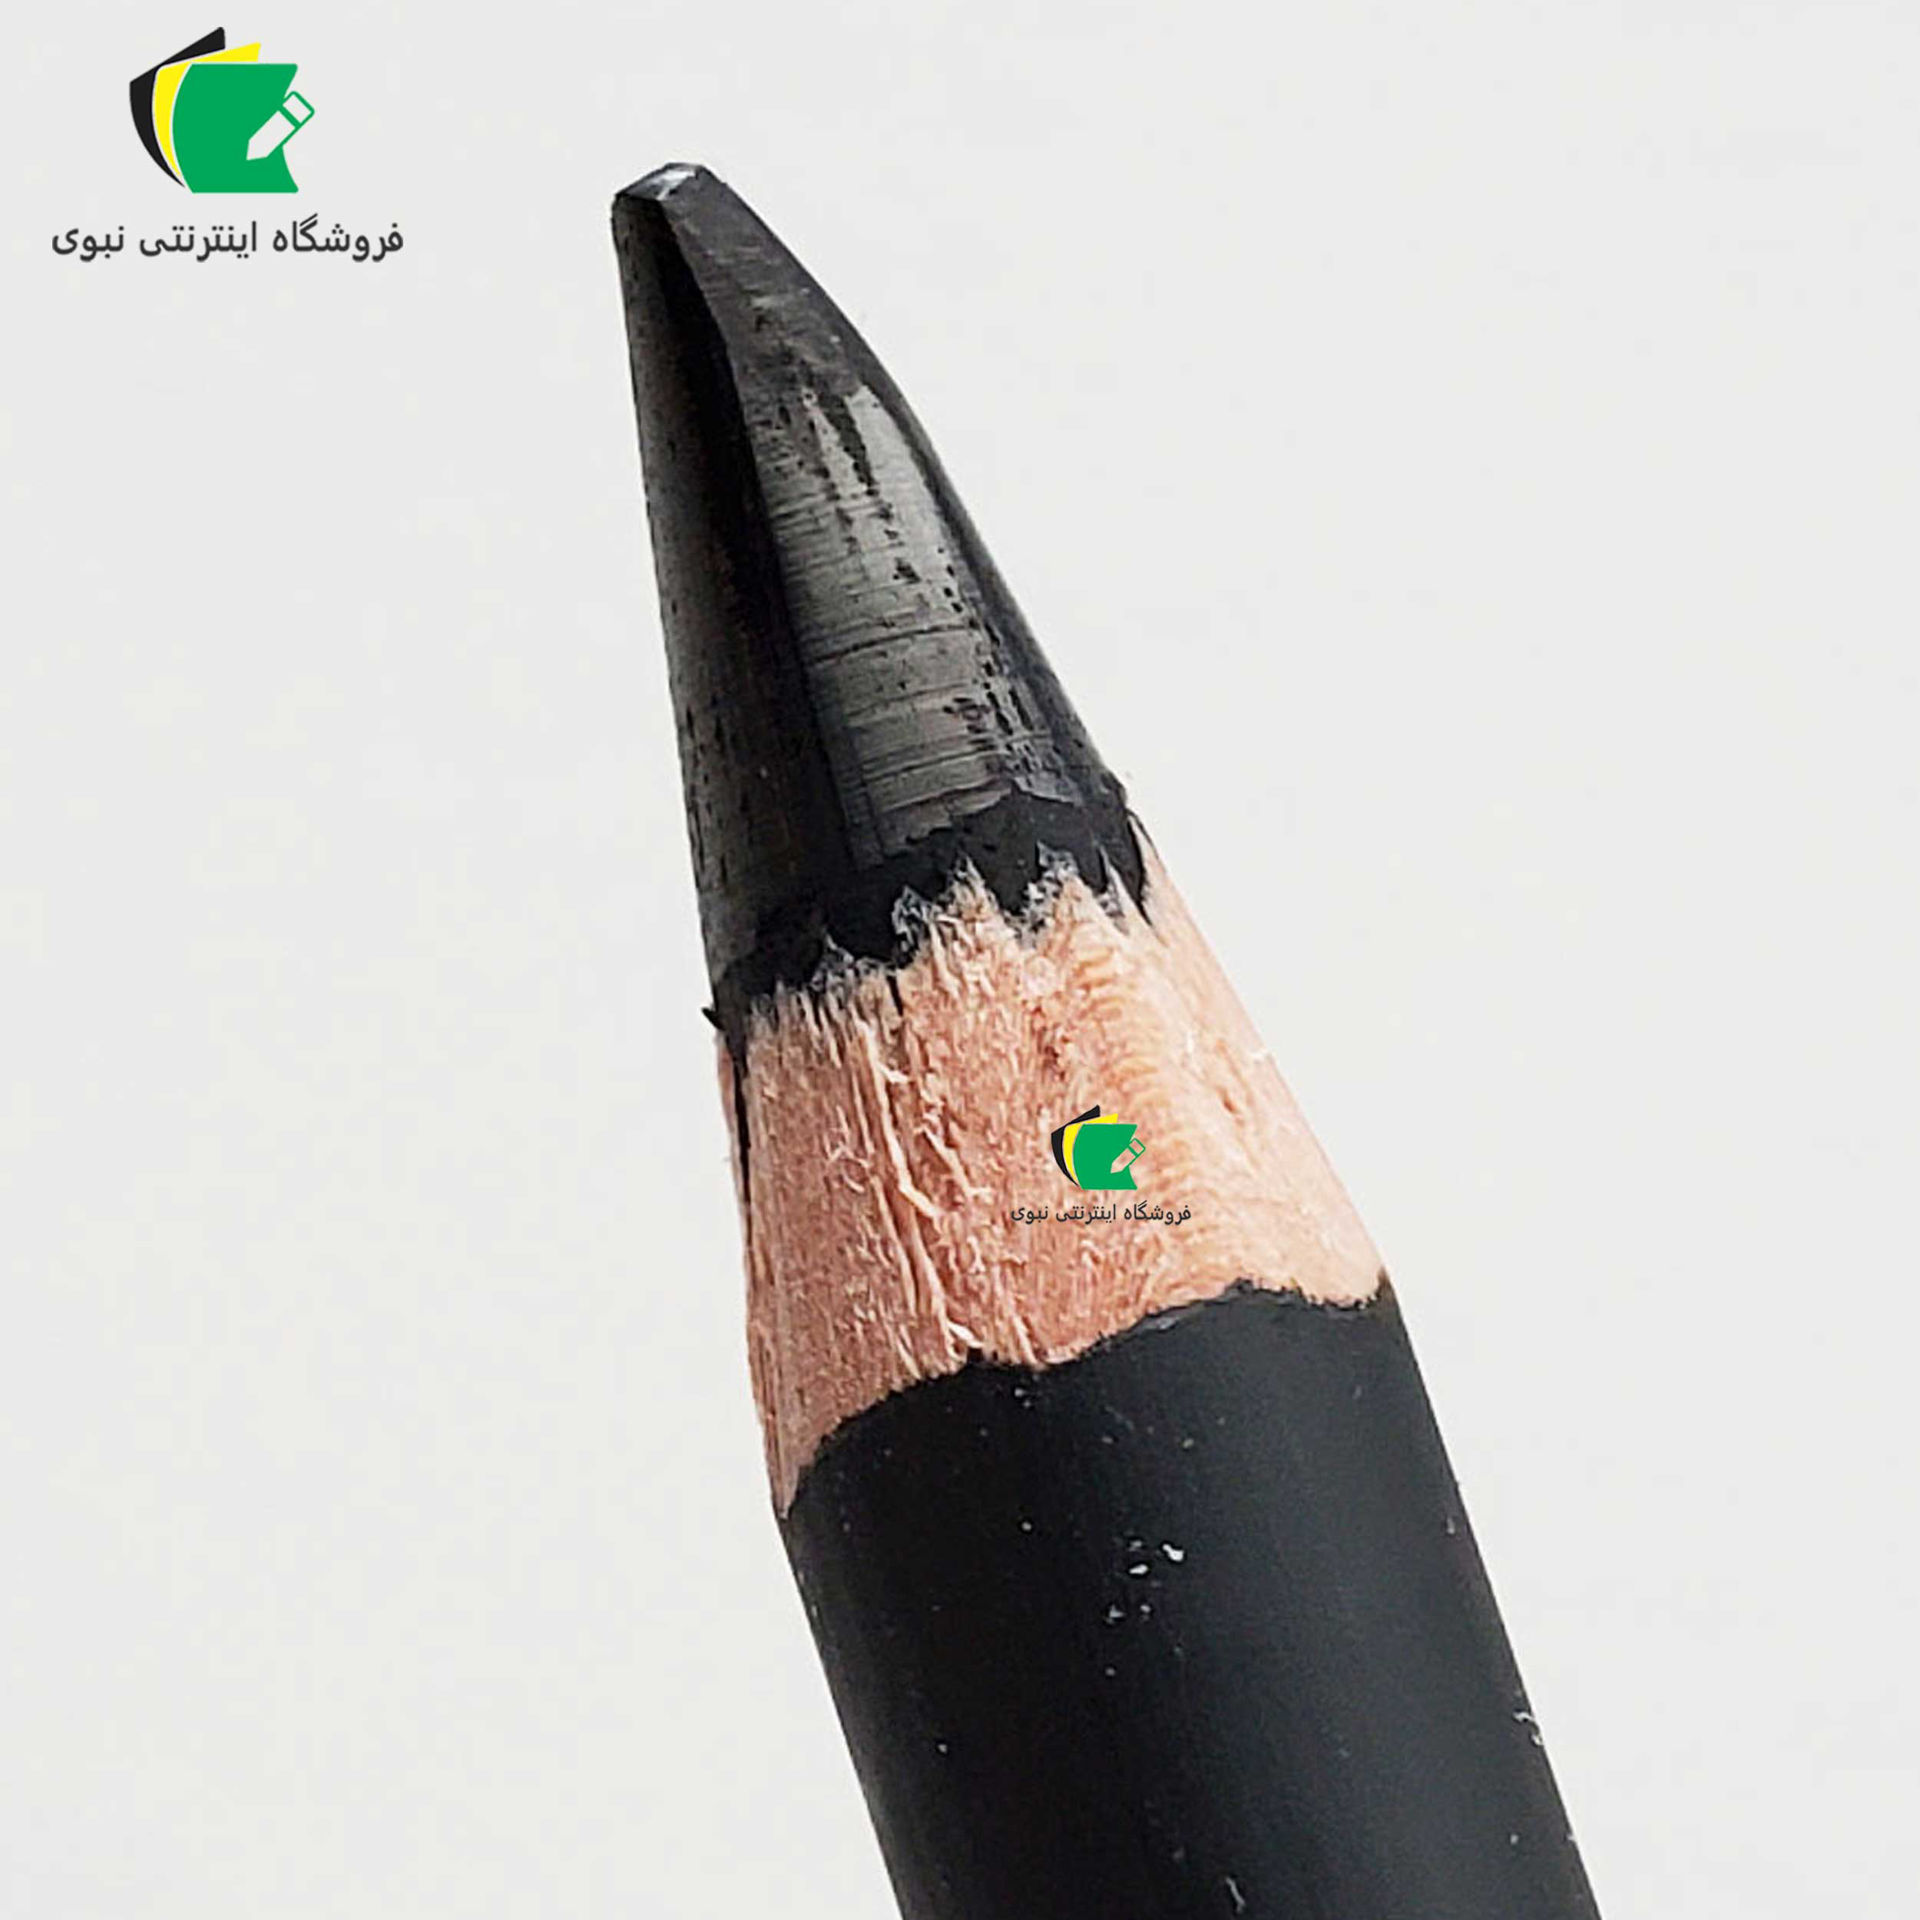 مداد کربنی لیرا مدل رامبراند مناسب برای طراحی و کنته و اسکیس